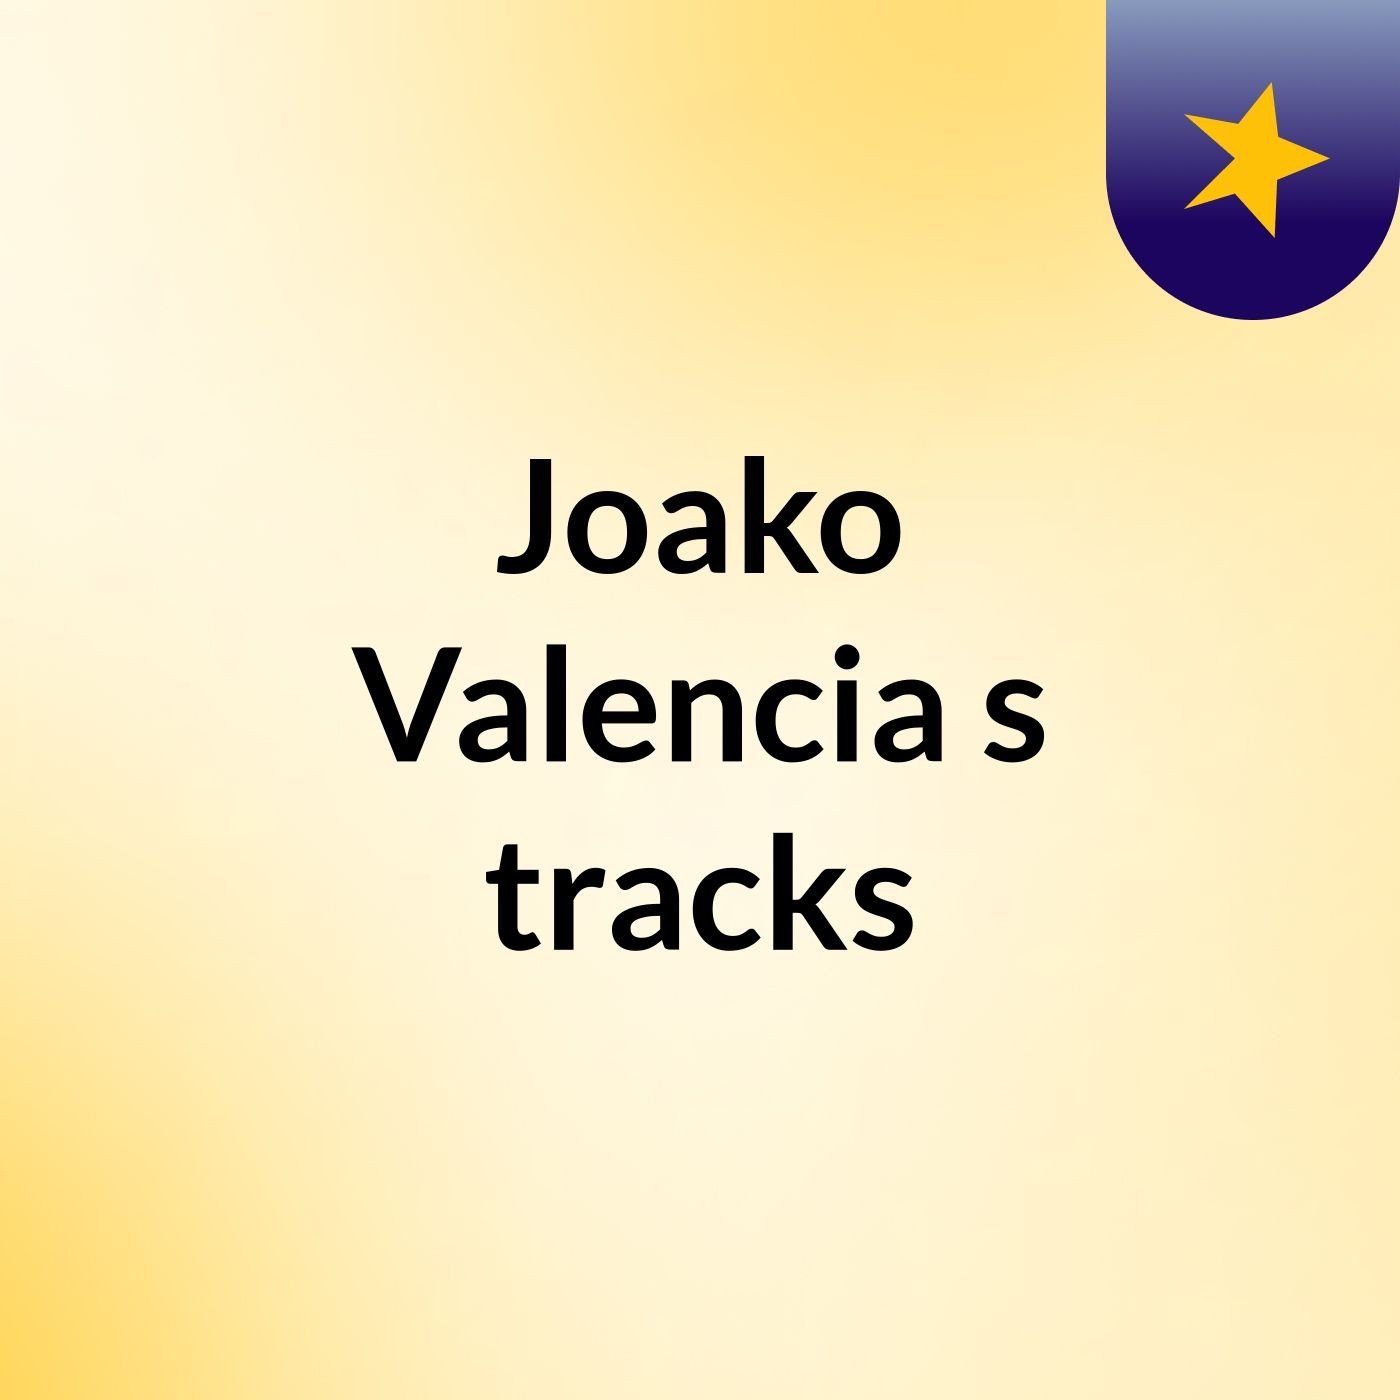 Joako Valencia's tracks